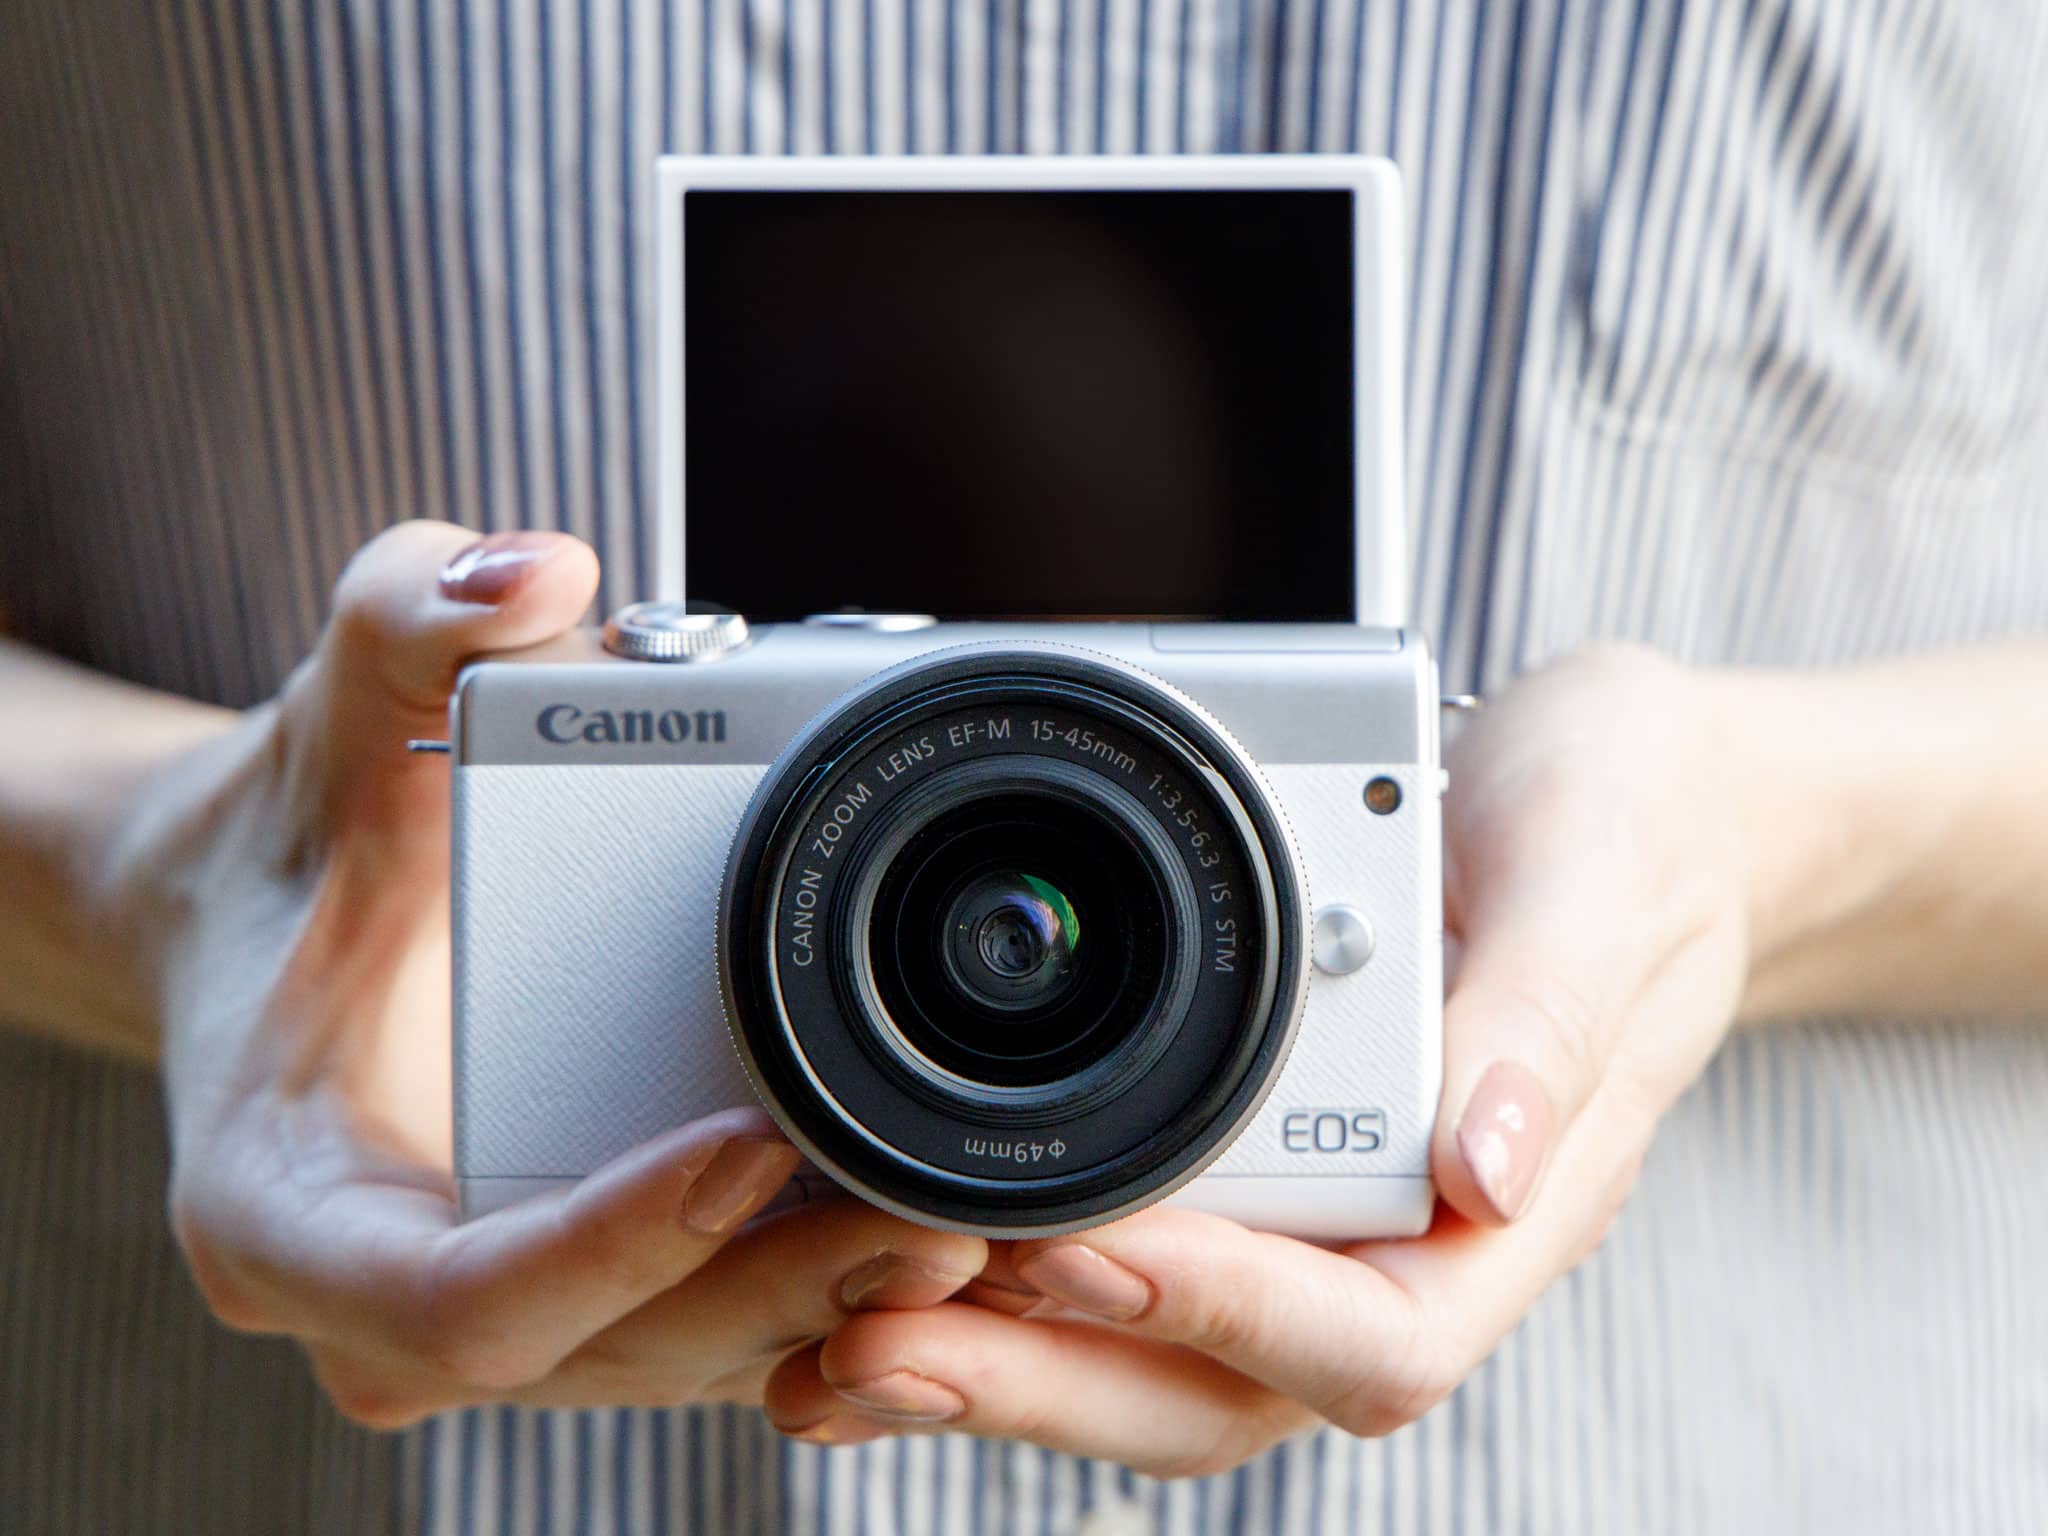 Máy ảnh Canon EOS M200 với ống kính 15-45mm (White)